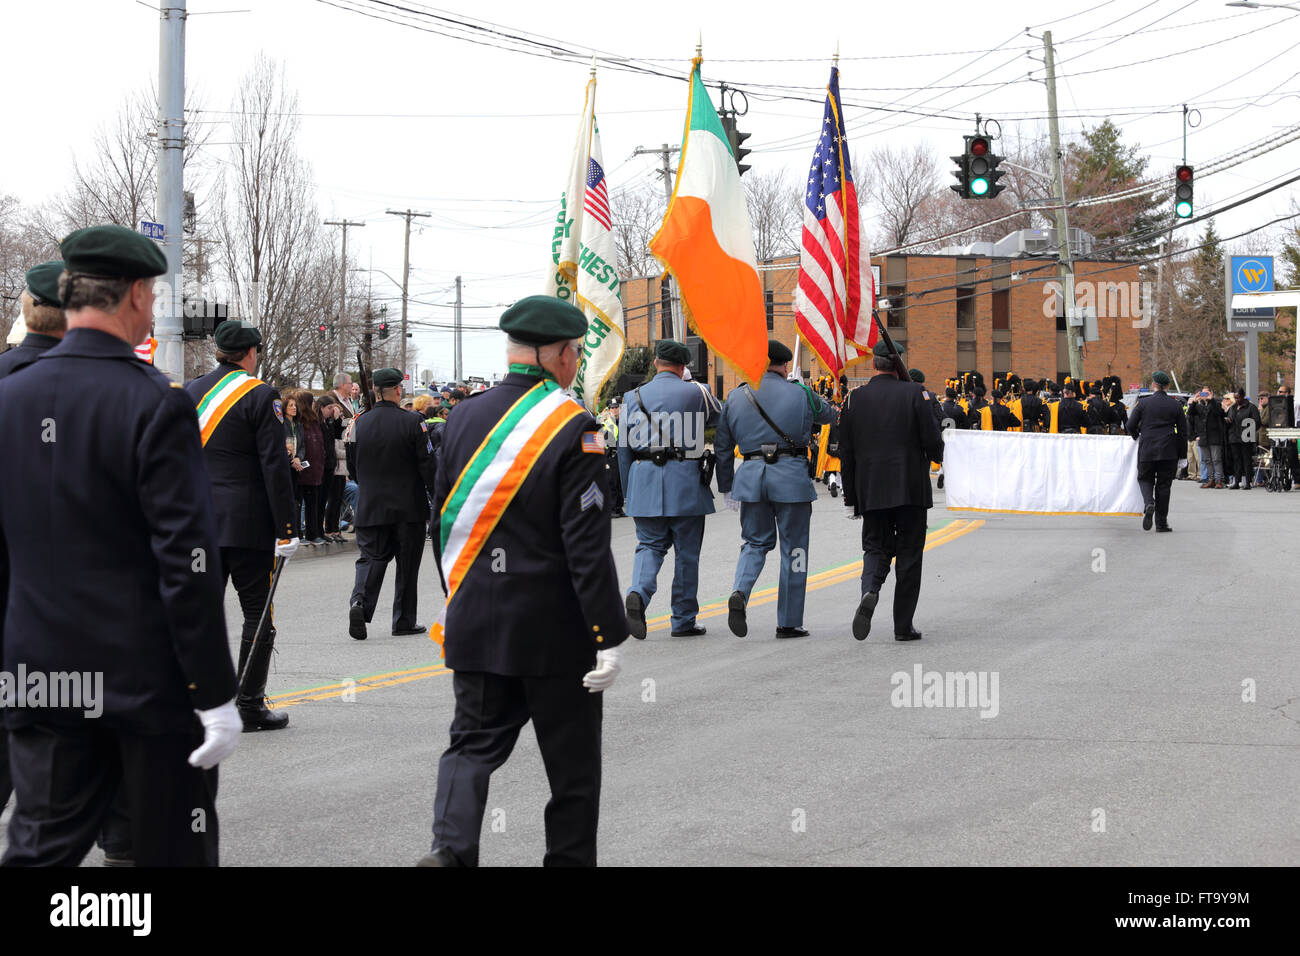 La police du comté de Westchester Garde d'honneur de la société Emeraude marching in St. Patrick's Day Parade Yonkers, New York Banque D'Images